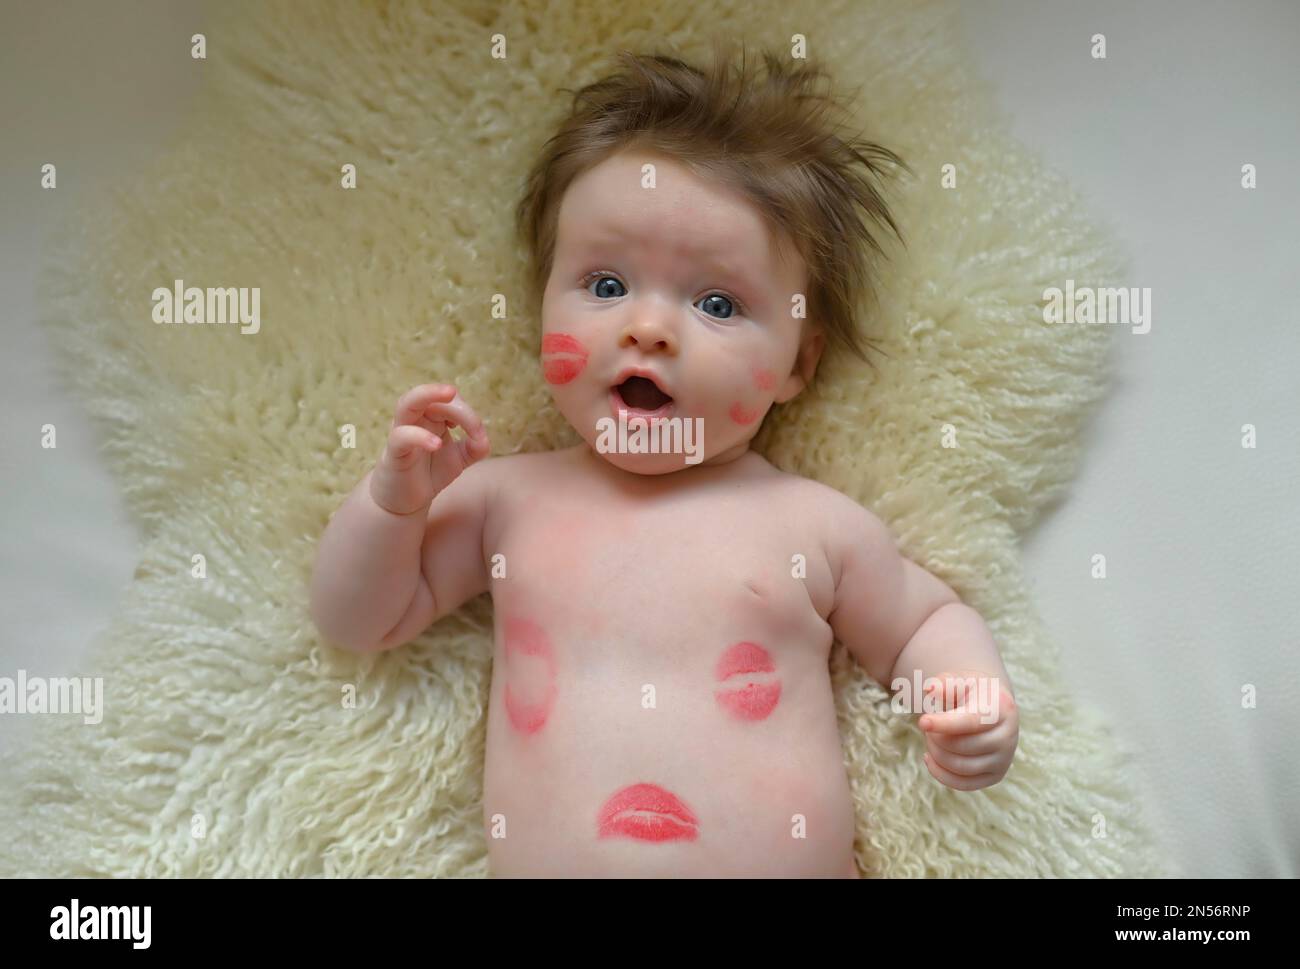 Kleinkind, Mädchen, 3 Monate, mit küssendem Mund von Lippenstift, Baden-Württemberg, Deutschland Stockfoto